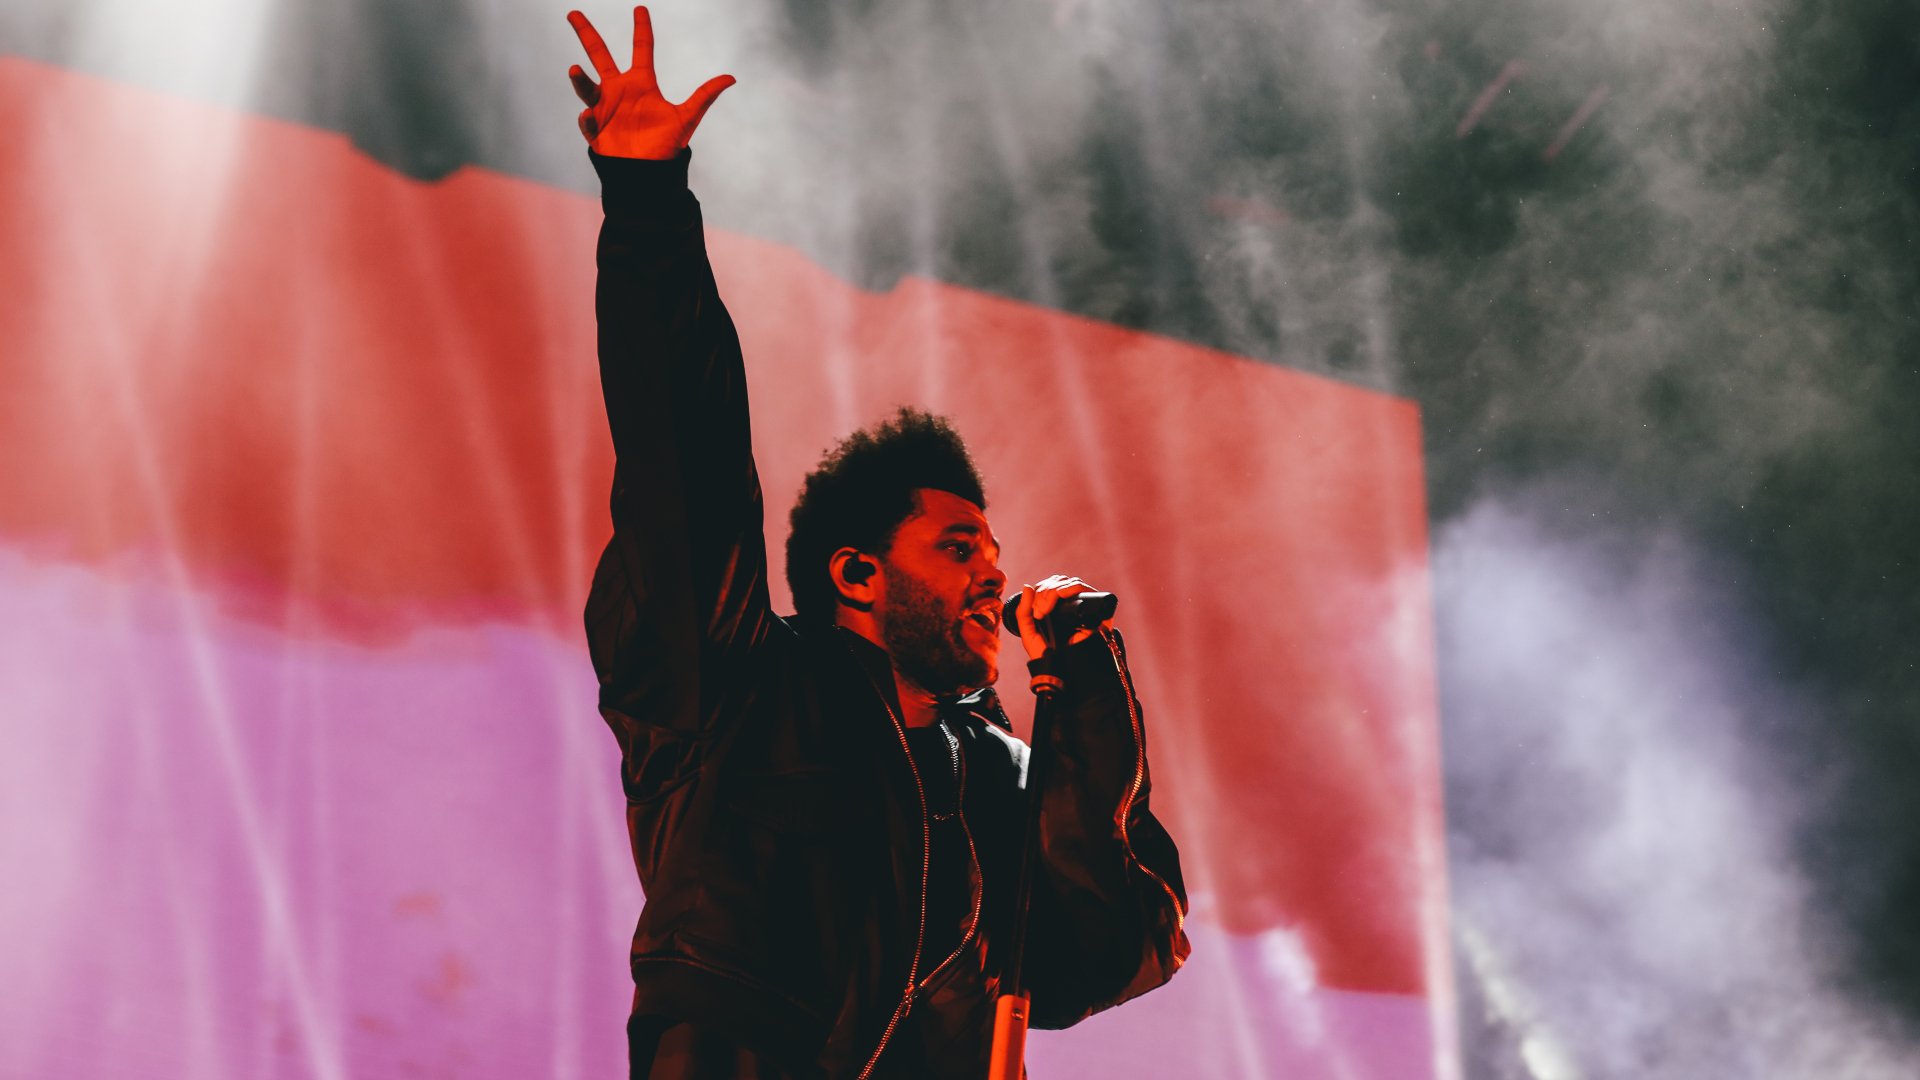 Concert de The Weeknd a Barcelona: l'artista arriba envoltat per la polèmica per la sèrie The Idol